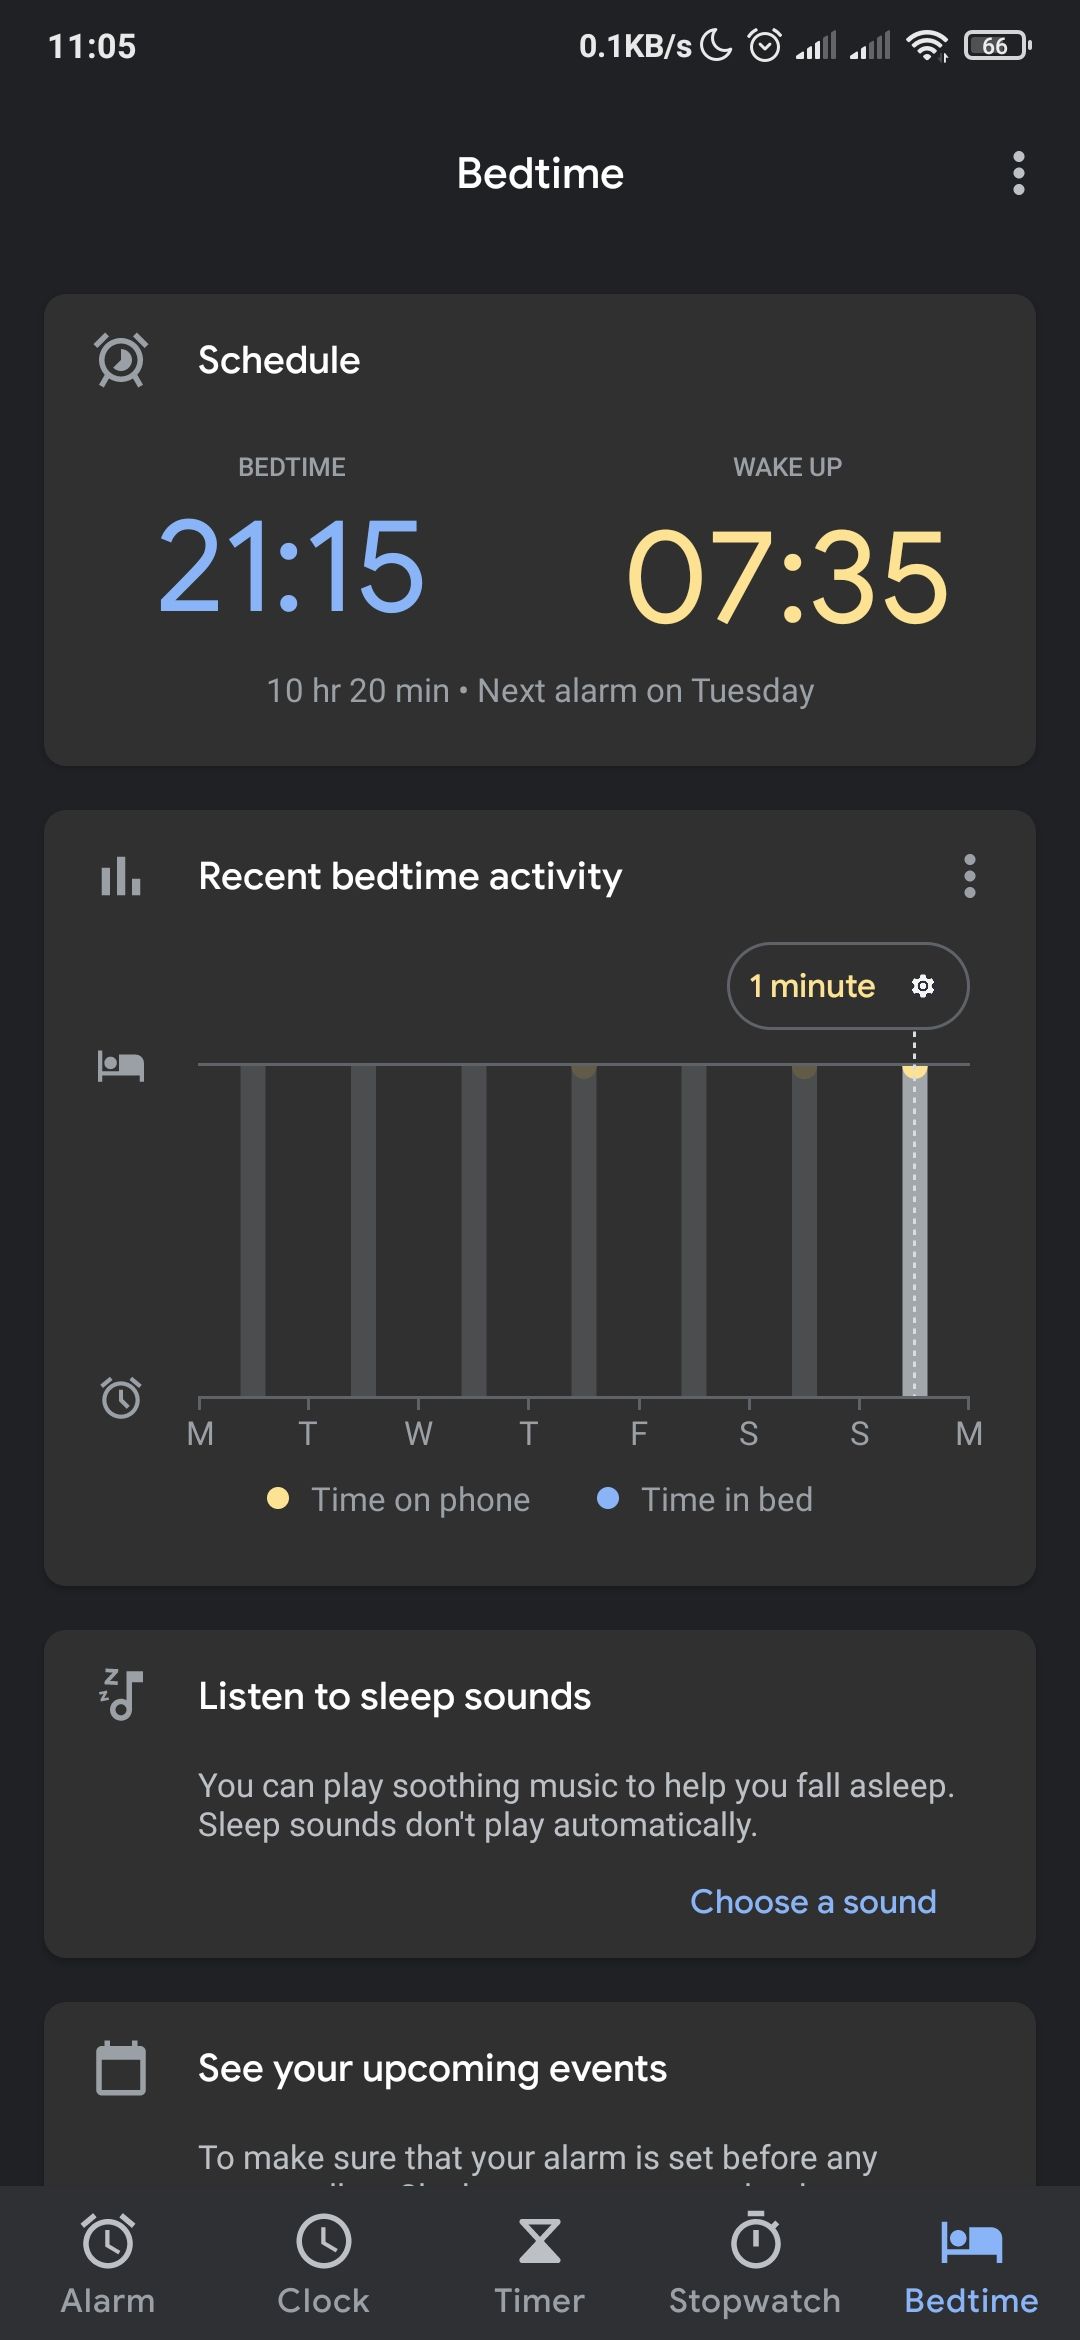 Bedtime activity report in Google's clock app